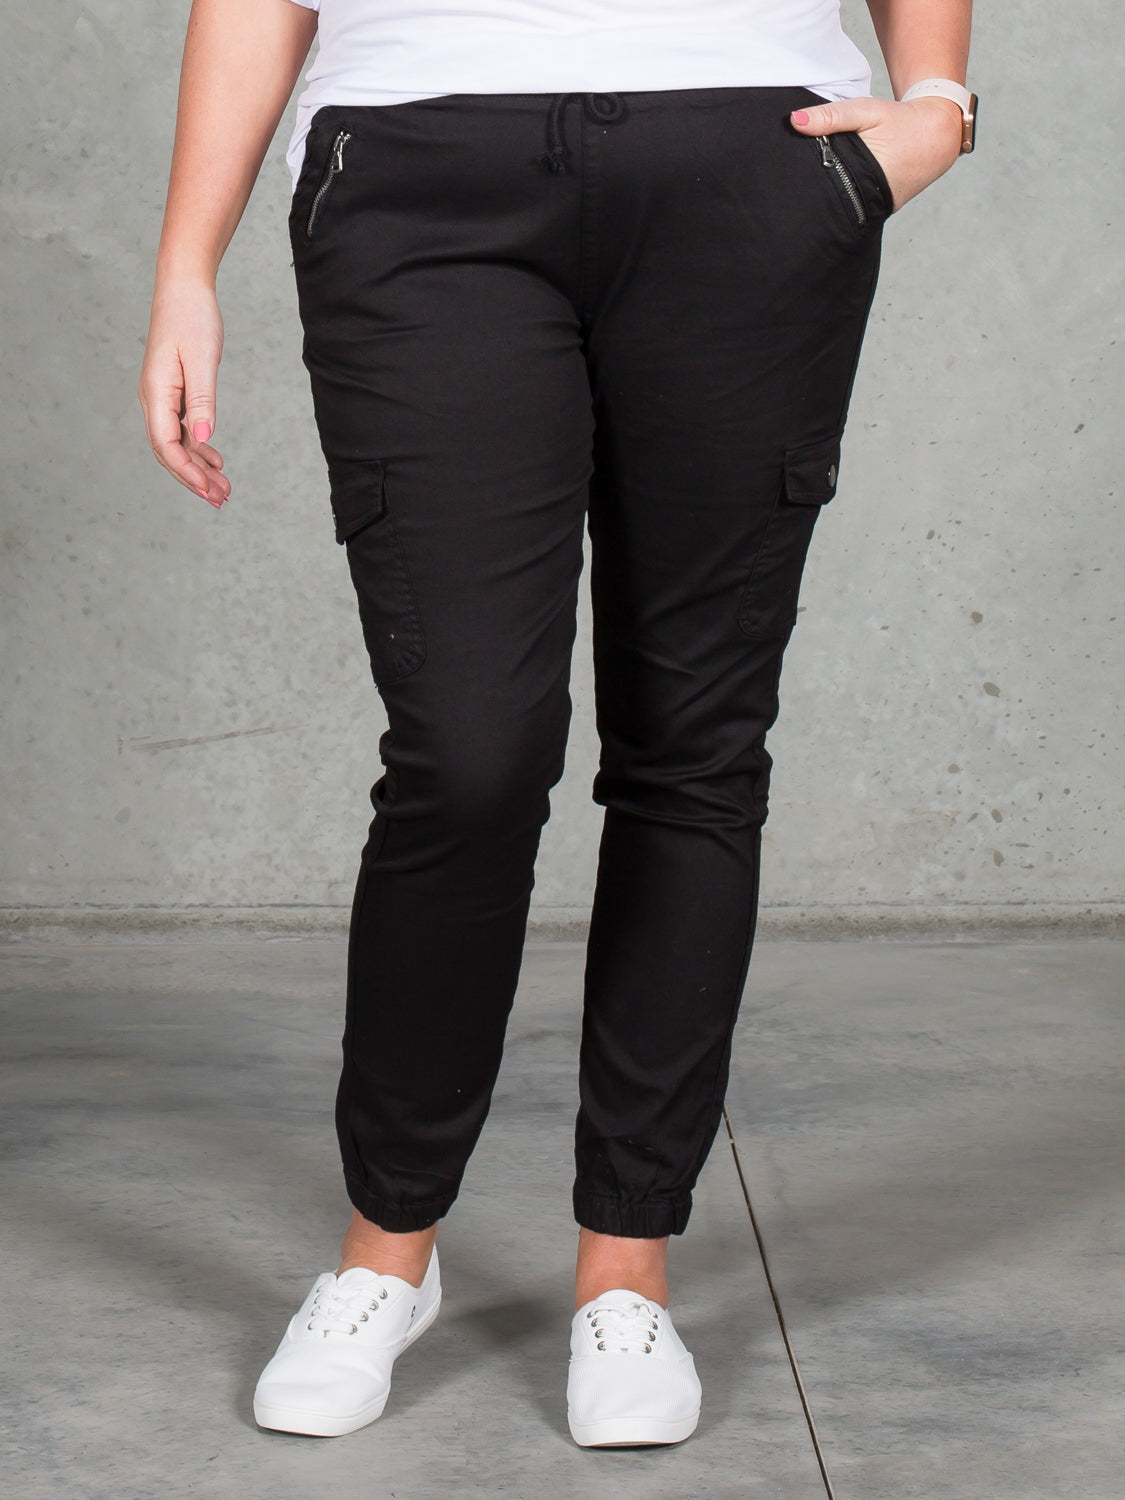 Women's Jogger Pants, Black, Cotton Blend - Jenni Joggers, Tall – Evergreen  Clothing